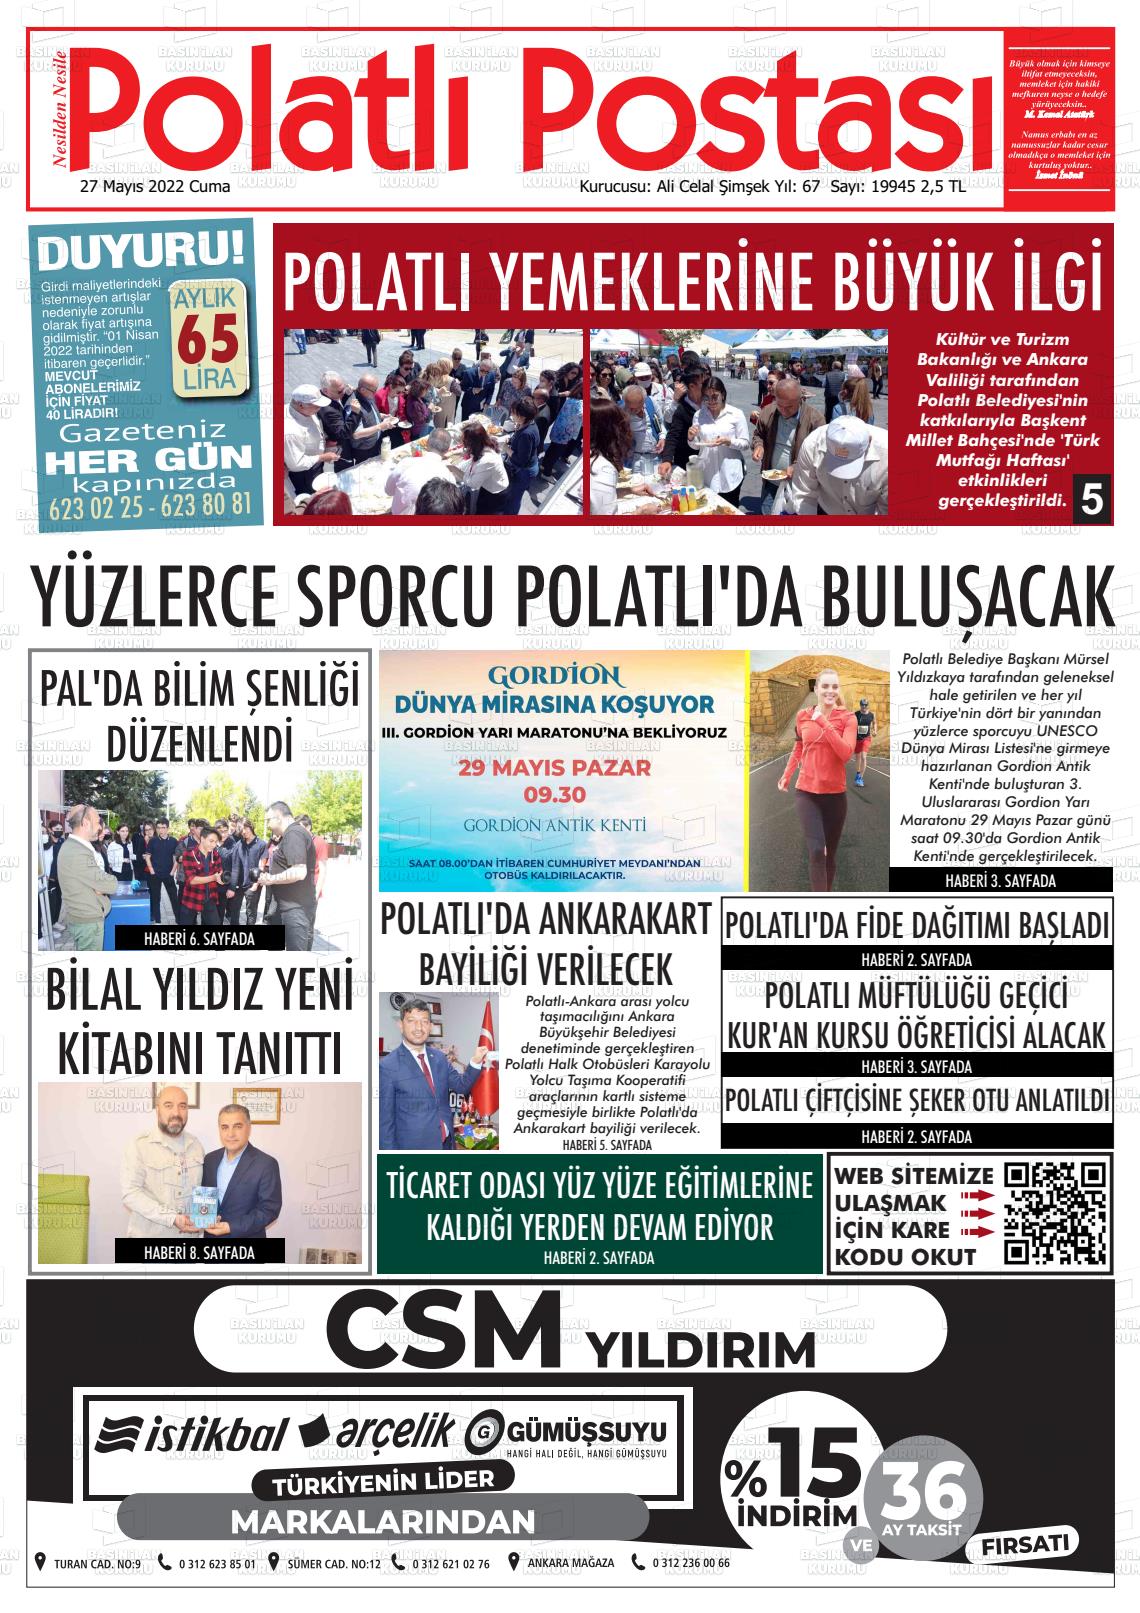 27 Mayıs 2022 Polatlı Postası Gazete Manşeti